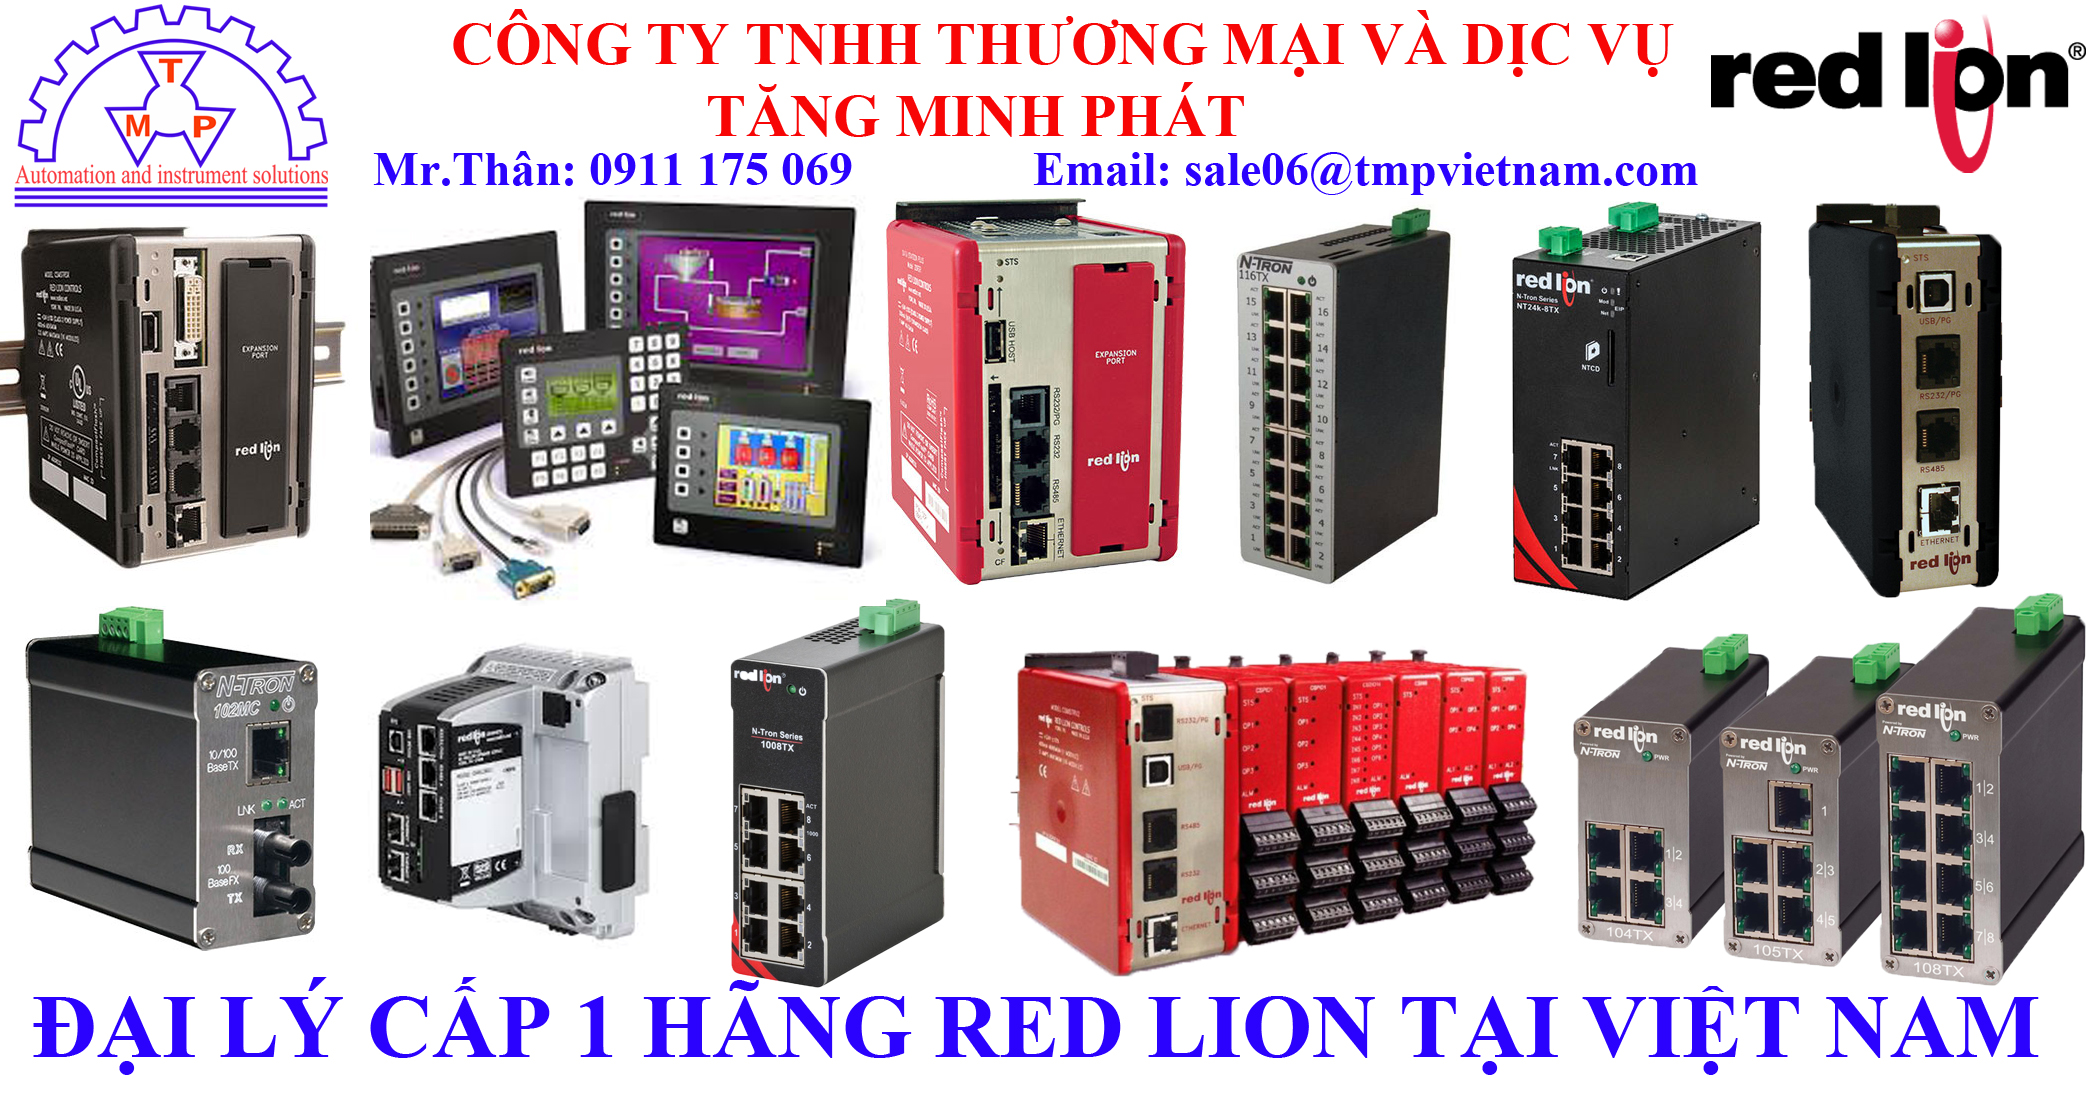 Đại lý hãng Red Lion tại VietNam.jpg